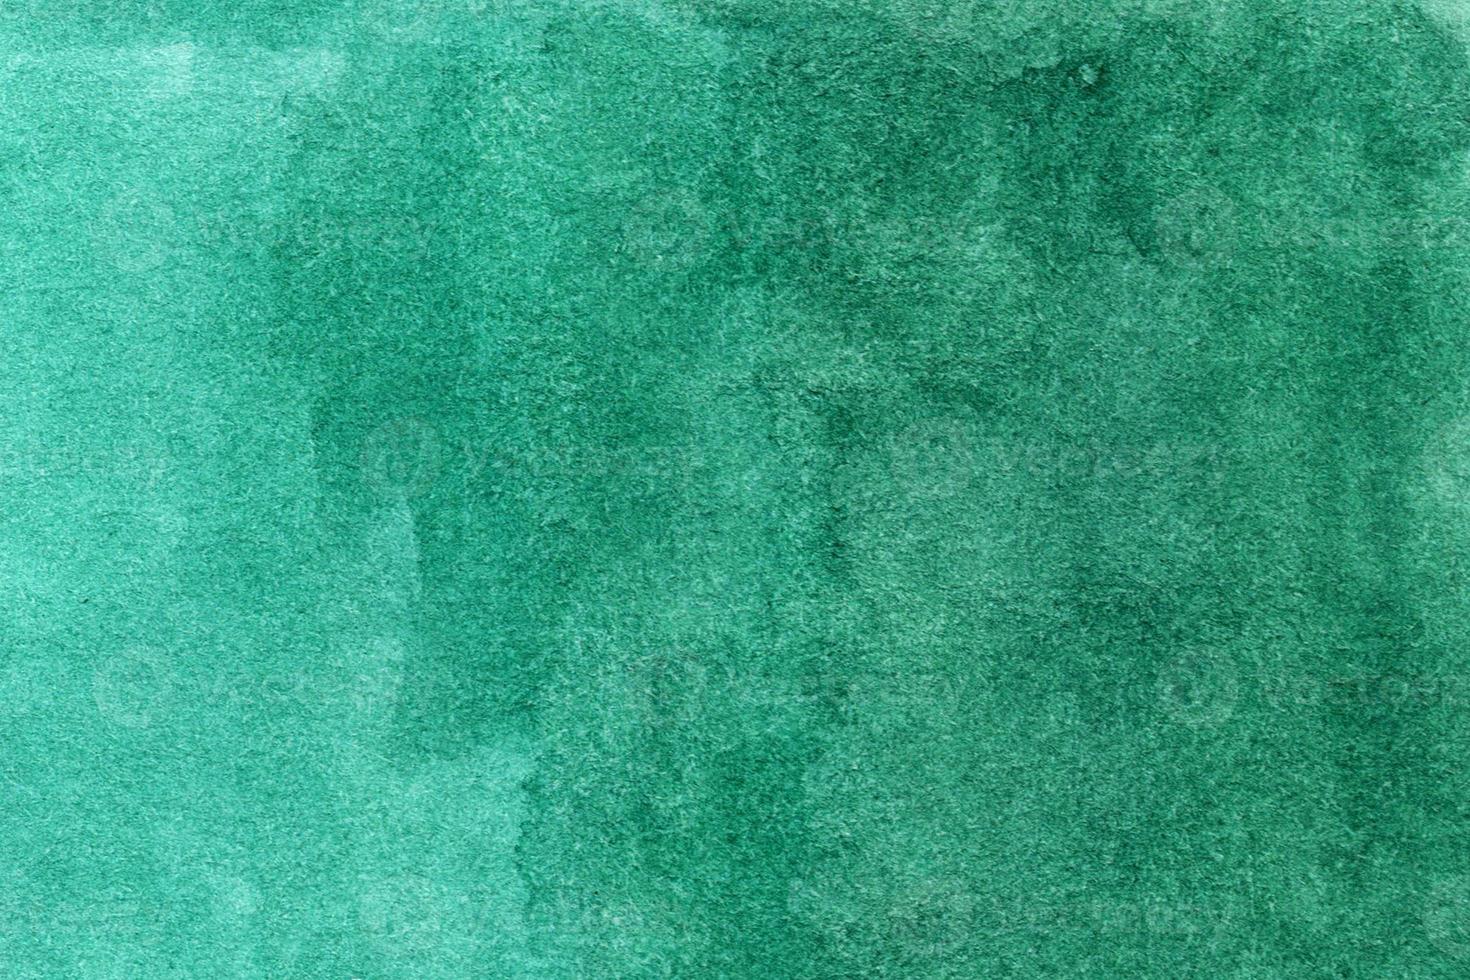 fond vert aquarelle avec des coups de pinceau, des points, des taches photo